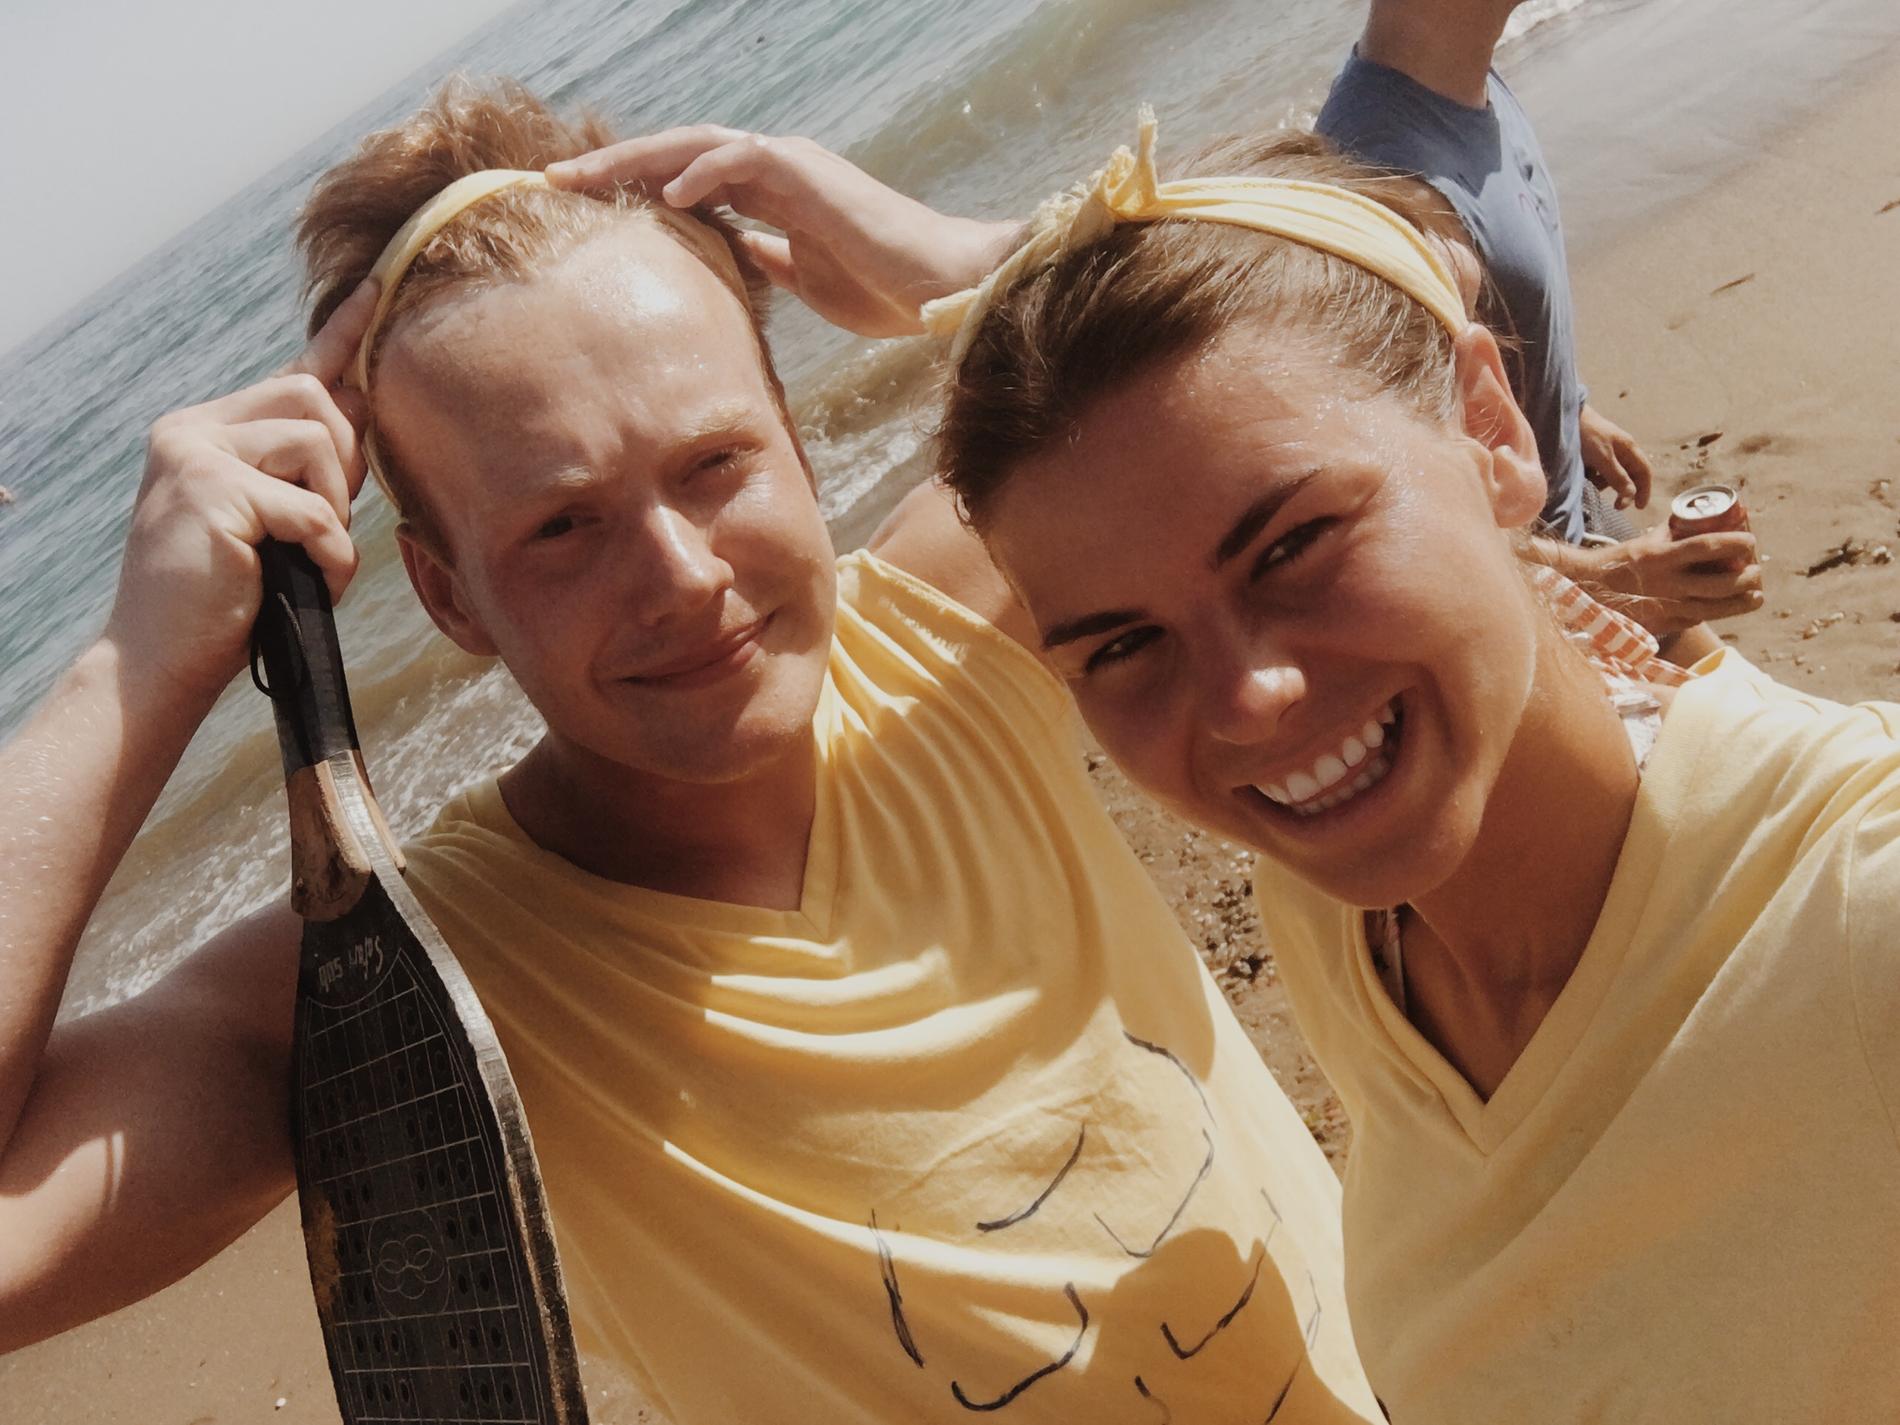  Marius Kambo Hafnor og Vilde Marie Dubland Nedrum under Øl-lympiske leker på stranda i Marbella.  